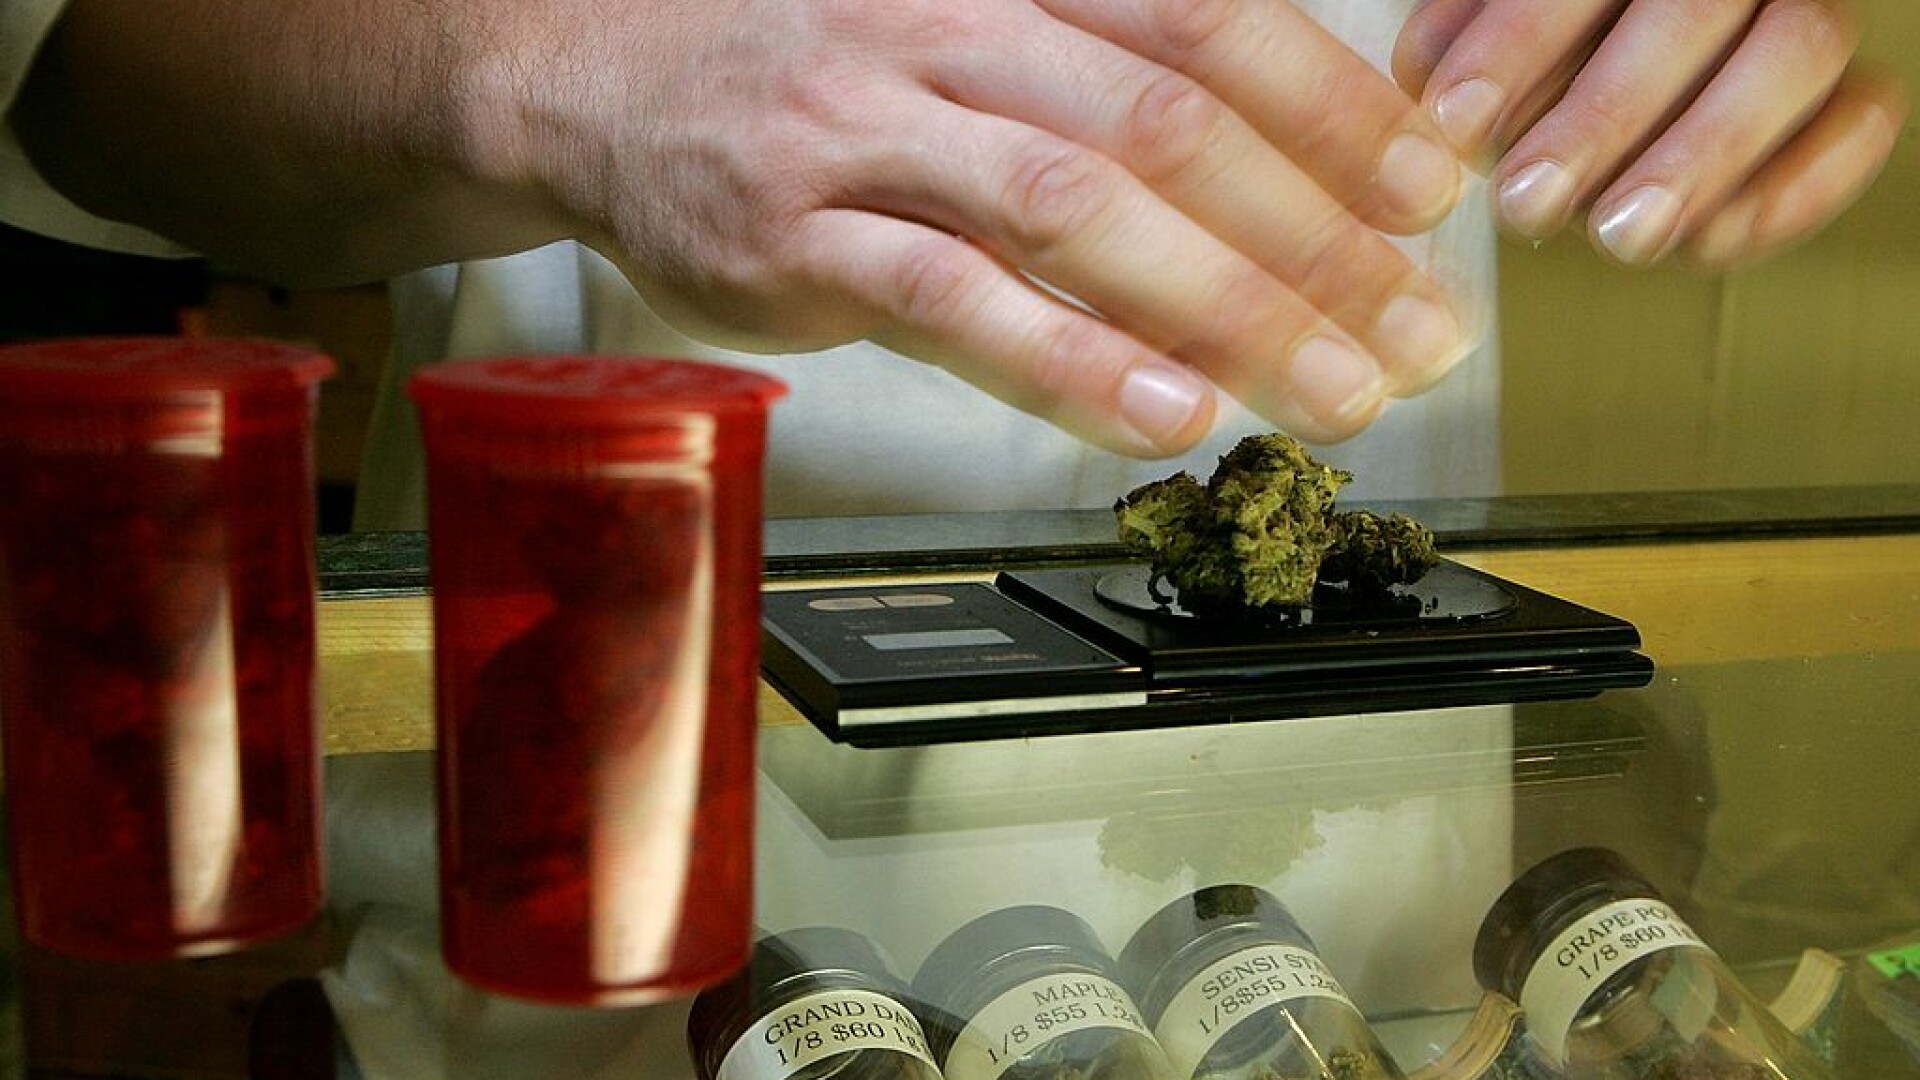 Americanii fac cozi la magazinele de marijuana: ”După ce stocurile de hârtie igienică s-au epuizat, au nevoie să se relaxeze”